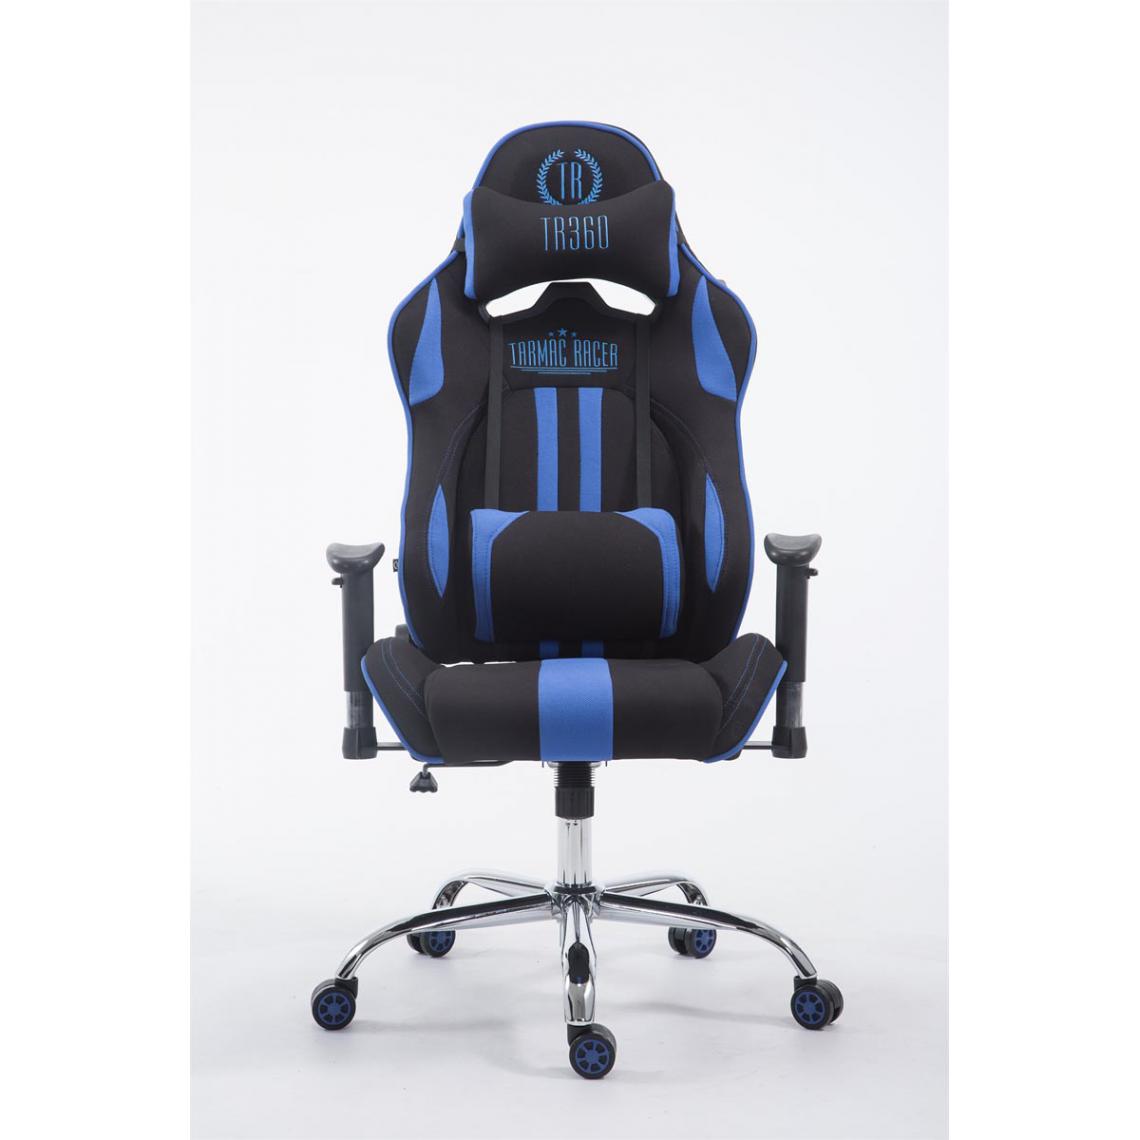 Icaverne - Superbe Chaise de bureau gamme Luanda tissu Limit V2 couleur noir / bleu - Chaises